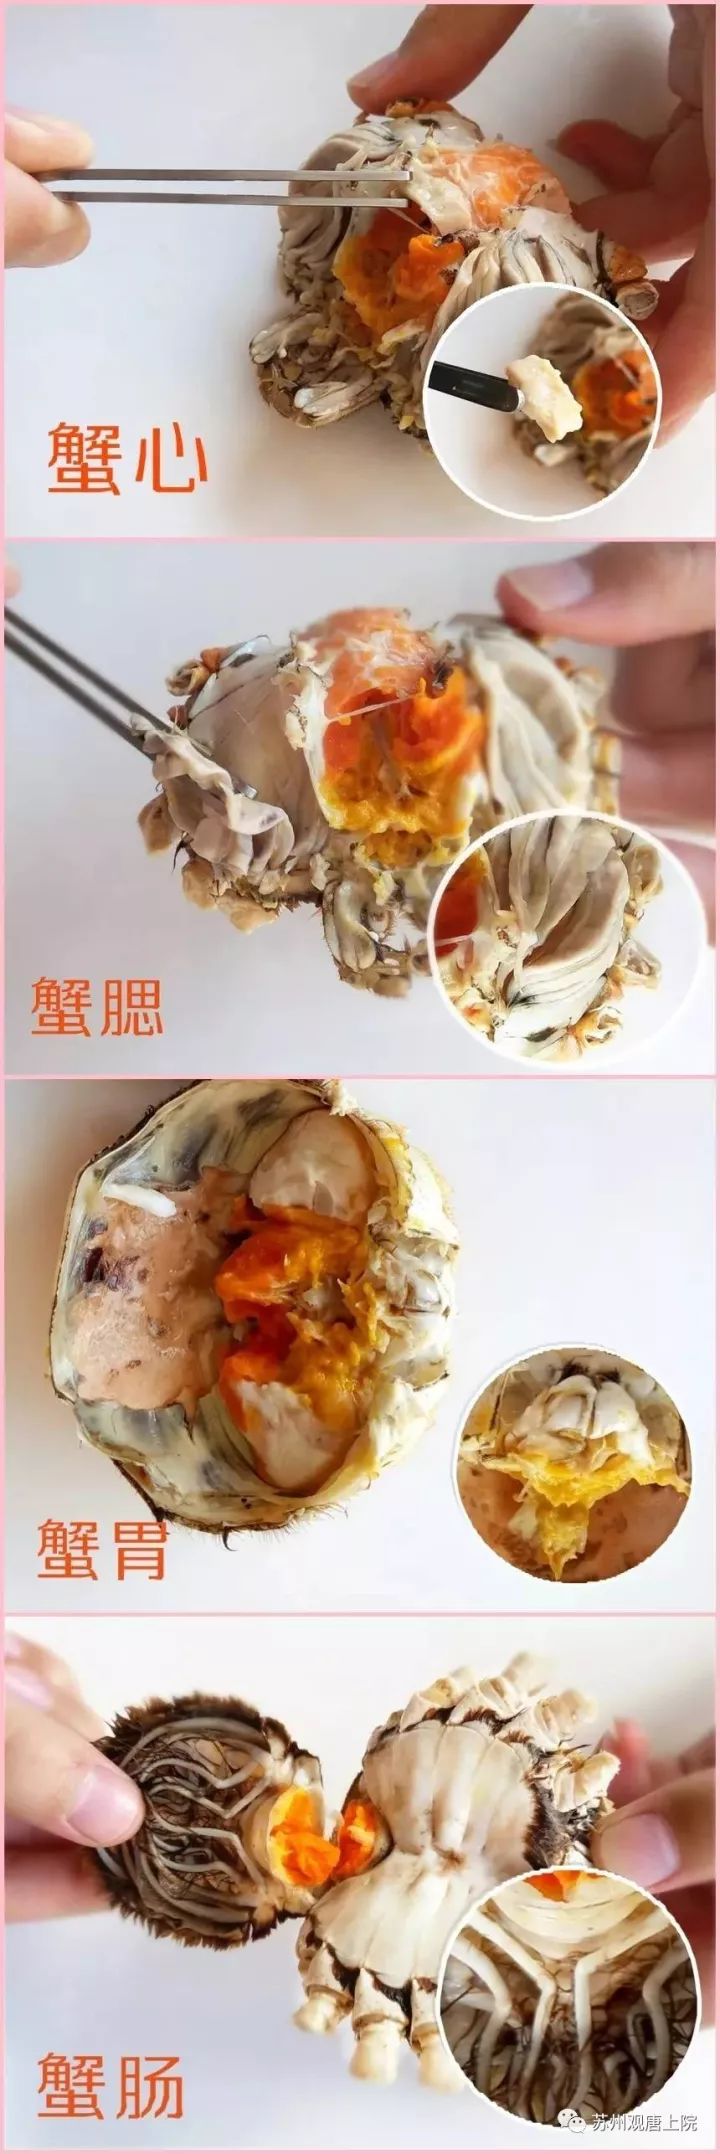 然后掰开蟹钳两边的壳,蟹肉就可以享用了; 饮姜茶 螃蟹性寒,吃完之后